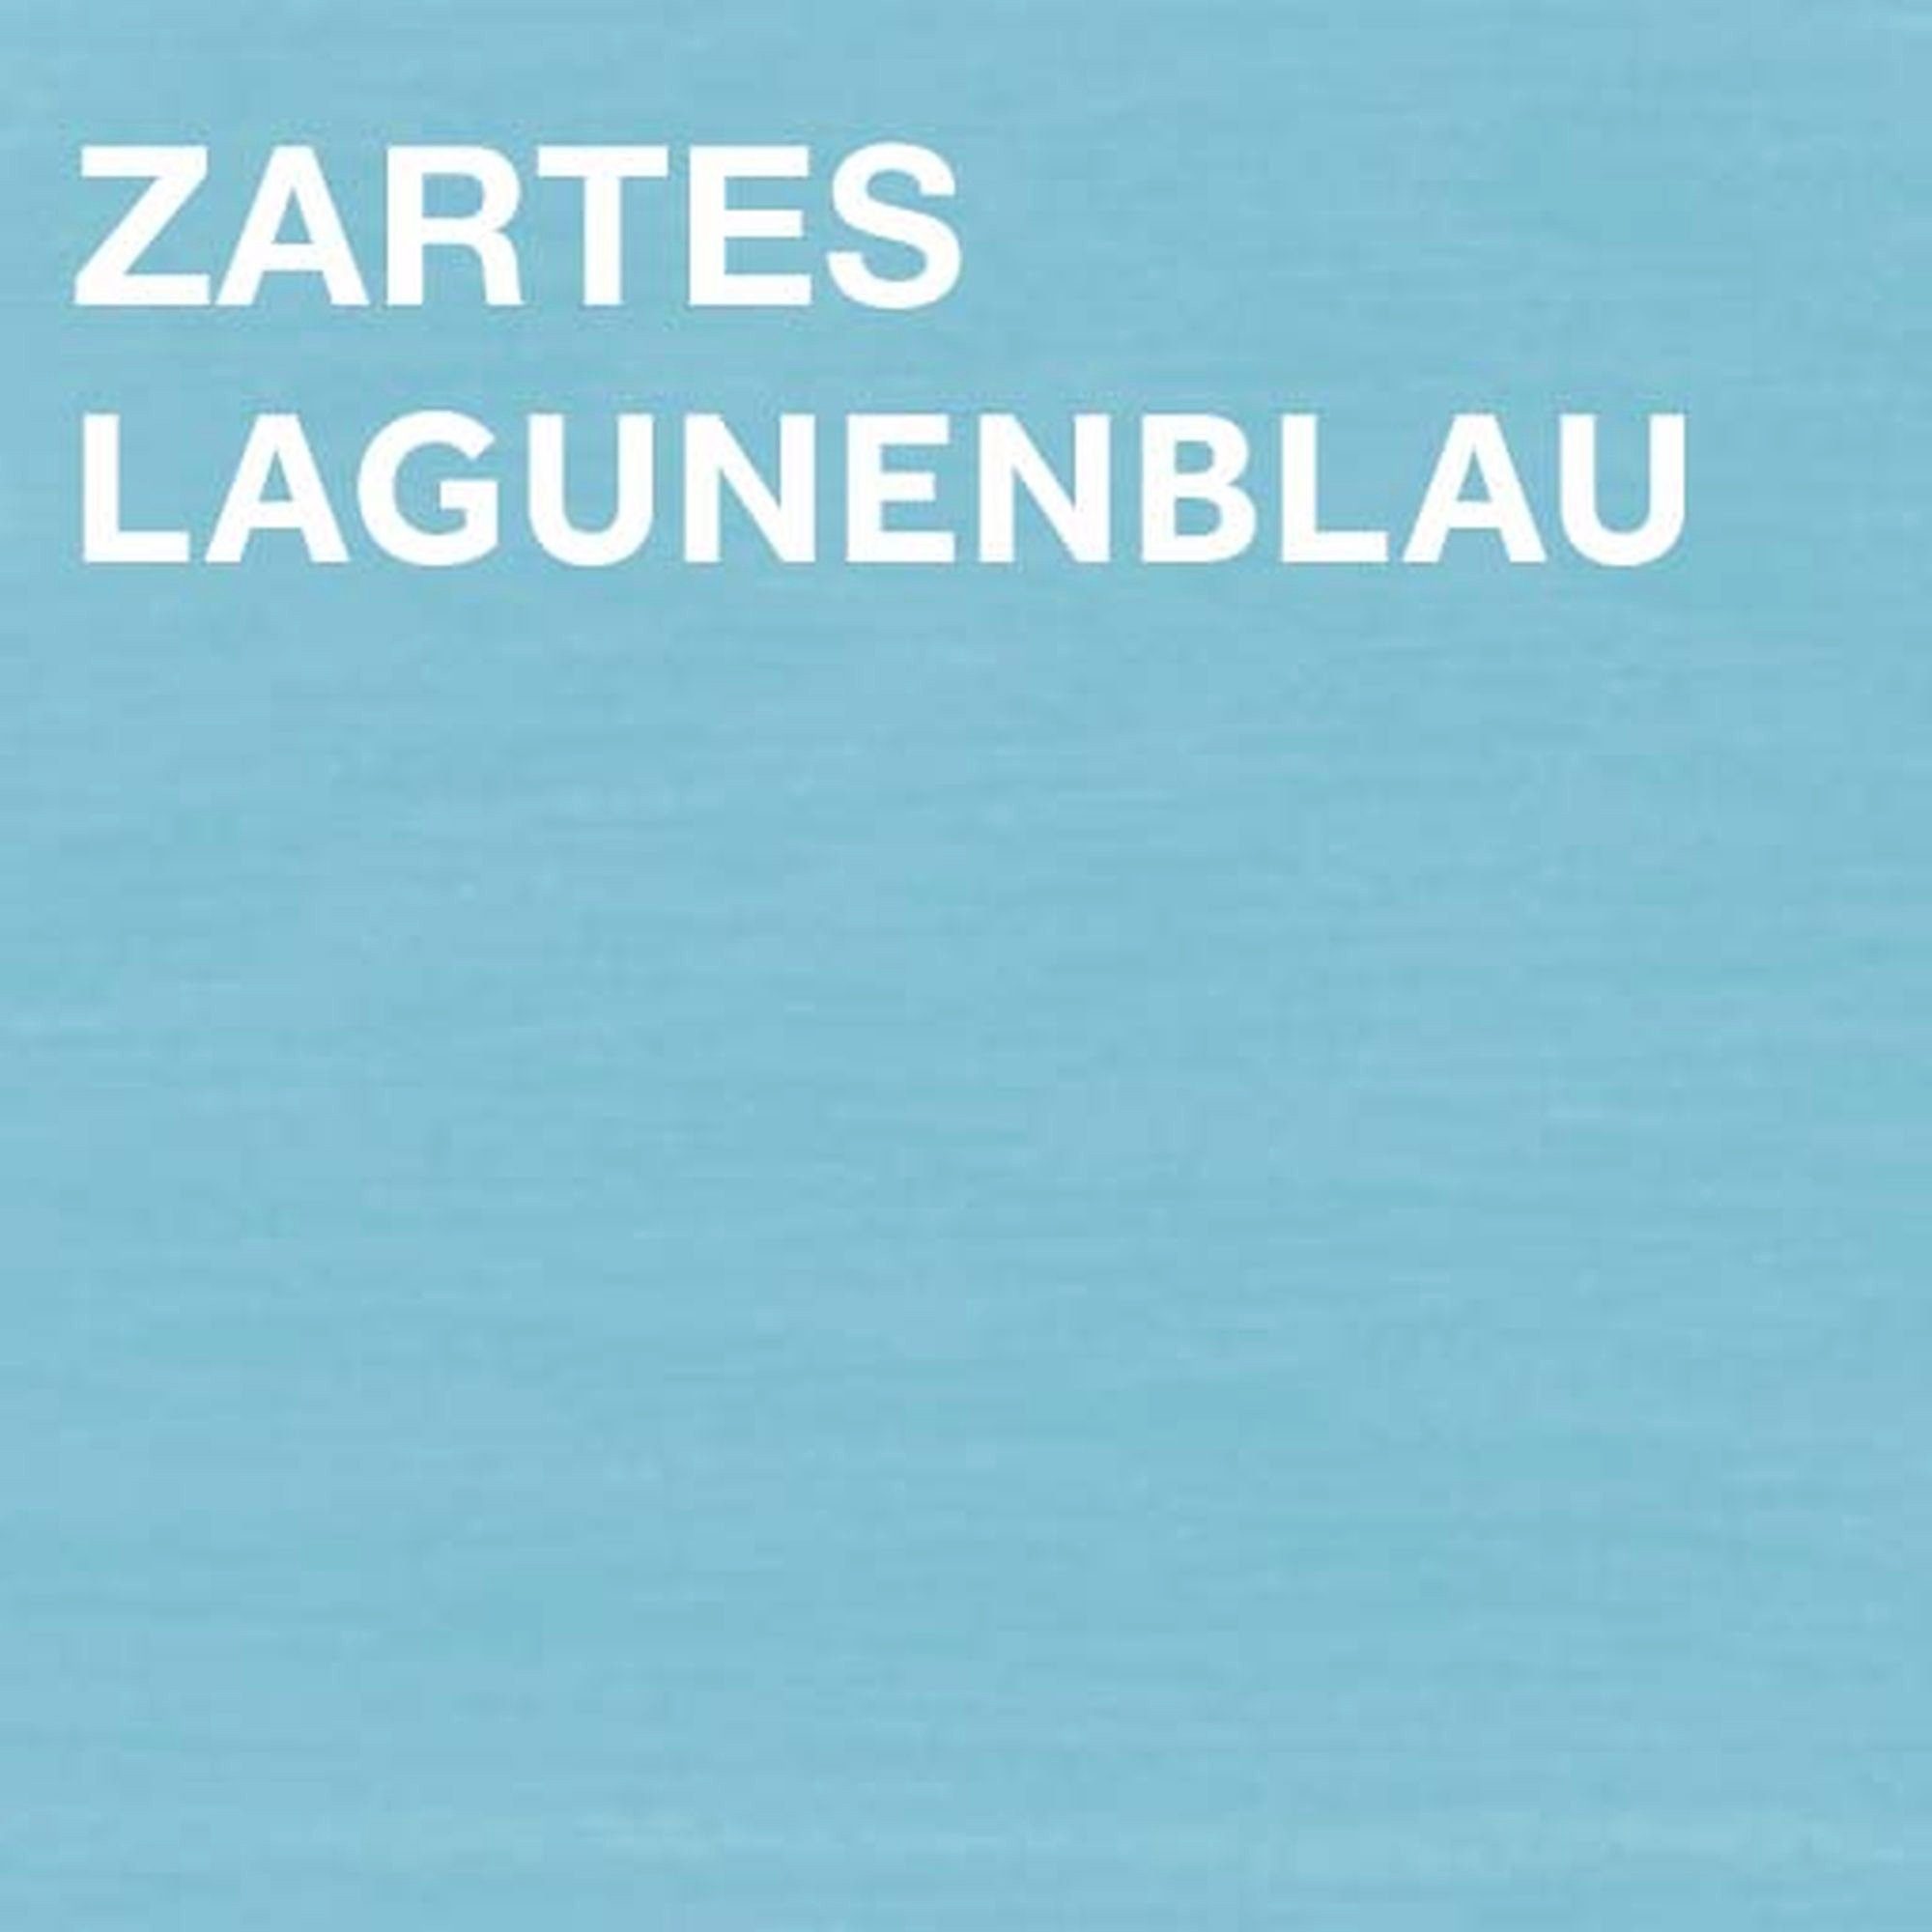 Bondex Wetterschutzfarbe GARDEN COLORS Spray, Inhalt Liter 0,4 Zartes Lagunenblau